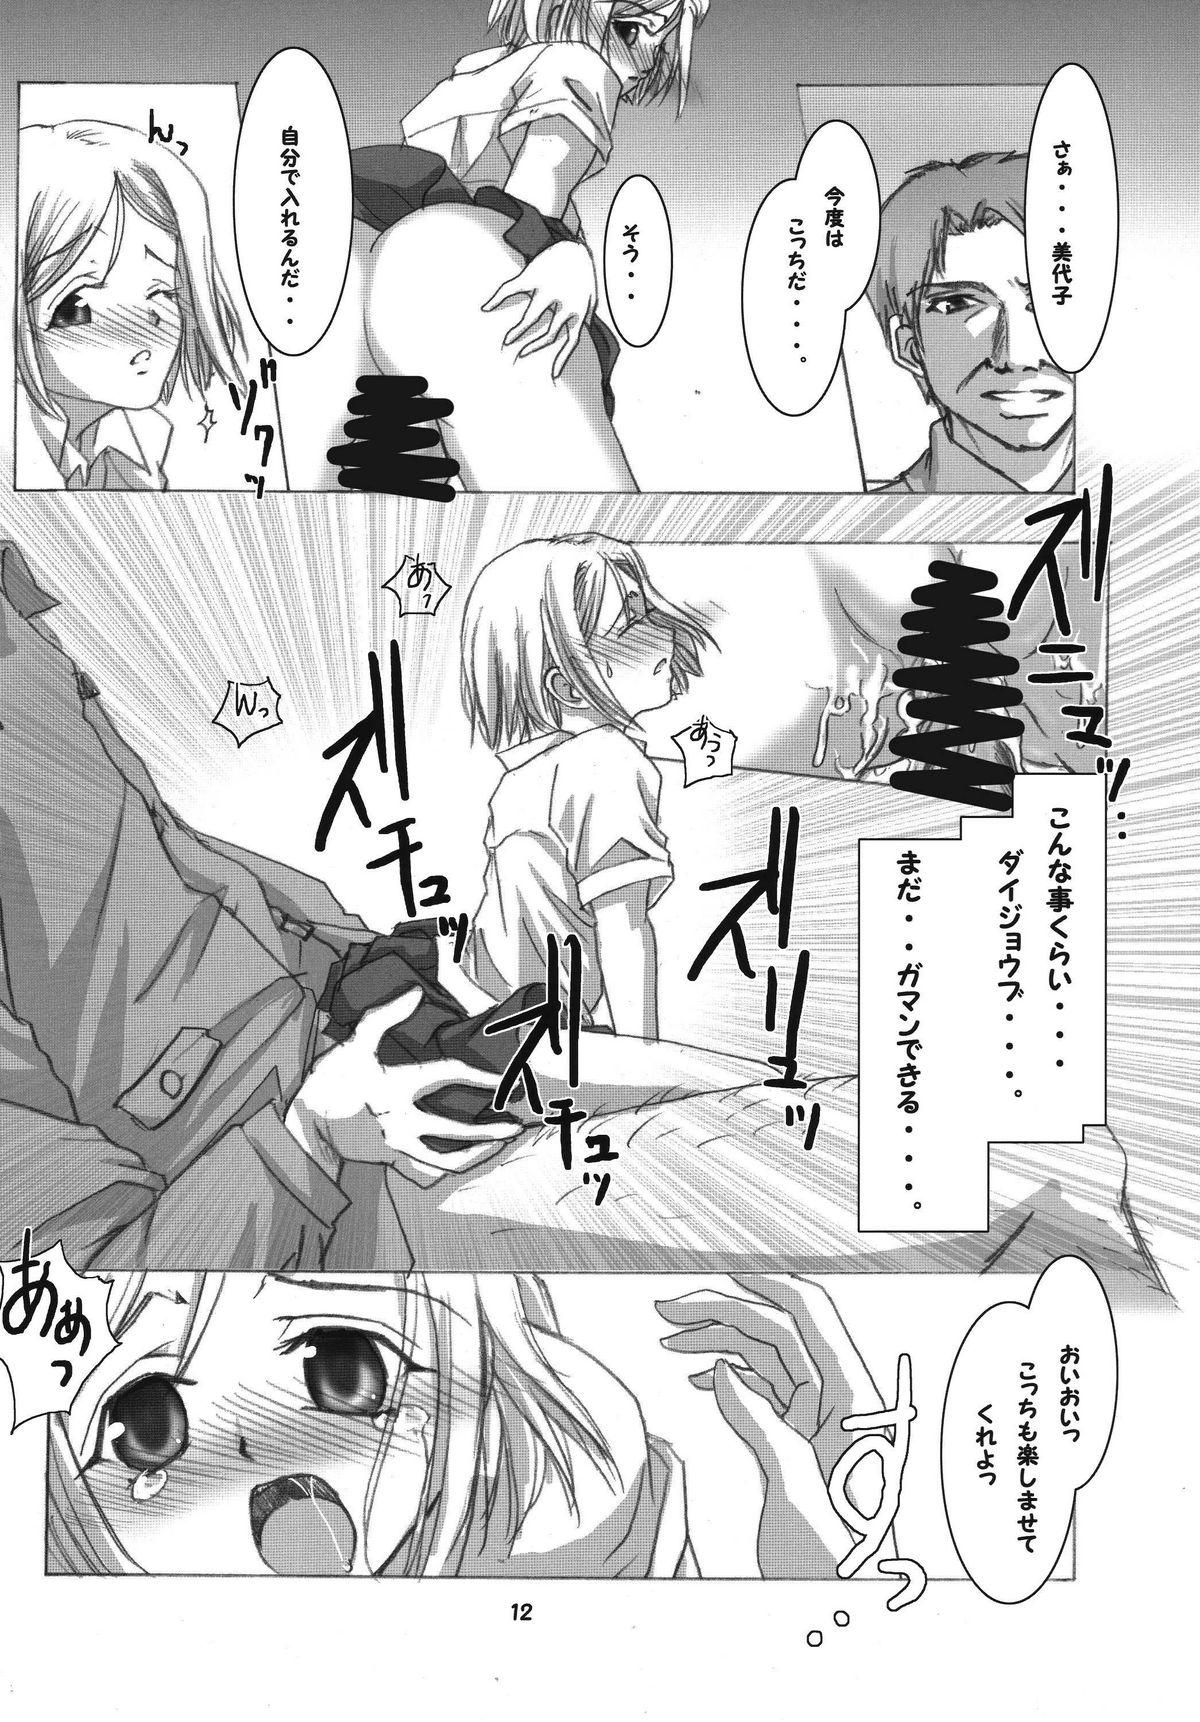 Milfs Kioku no Kakera - Higurashi no naku koro ni Gays - Page 12